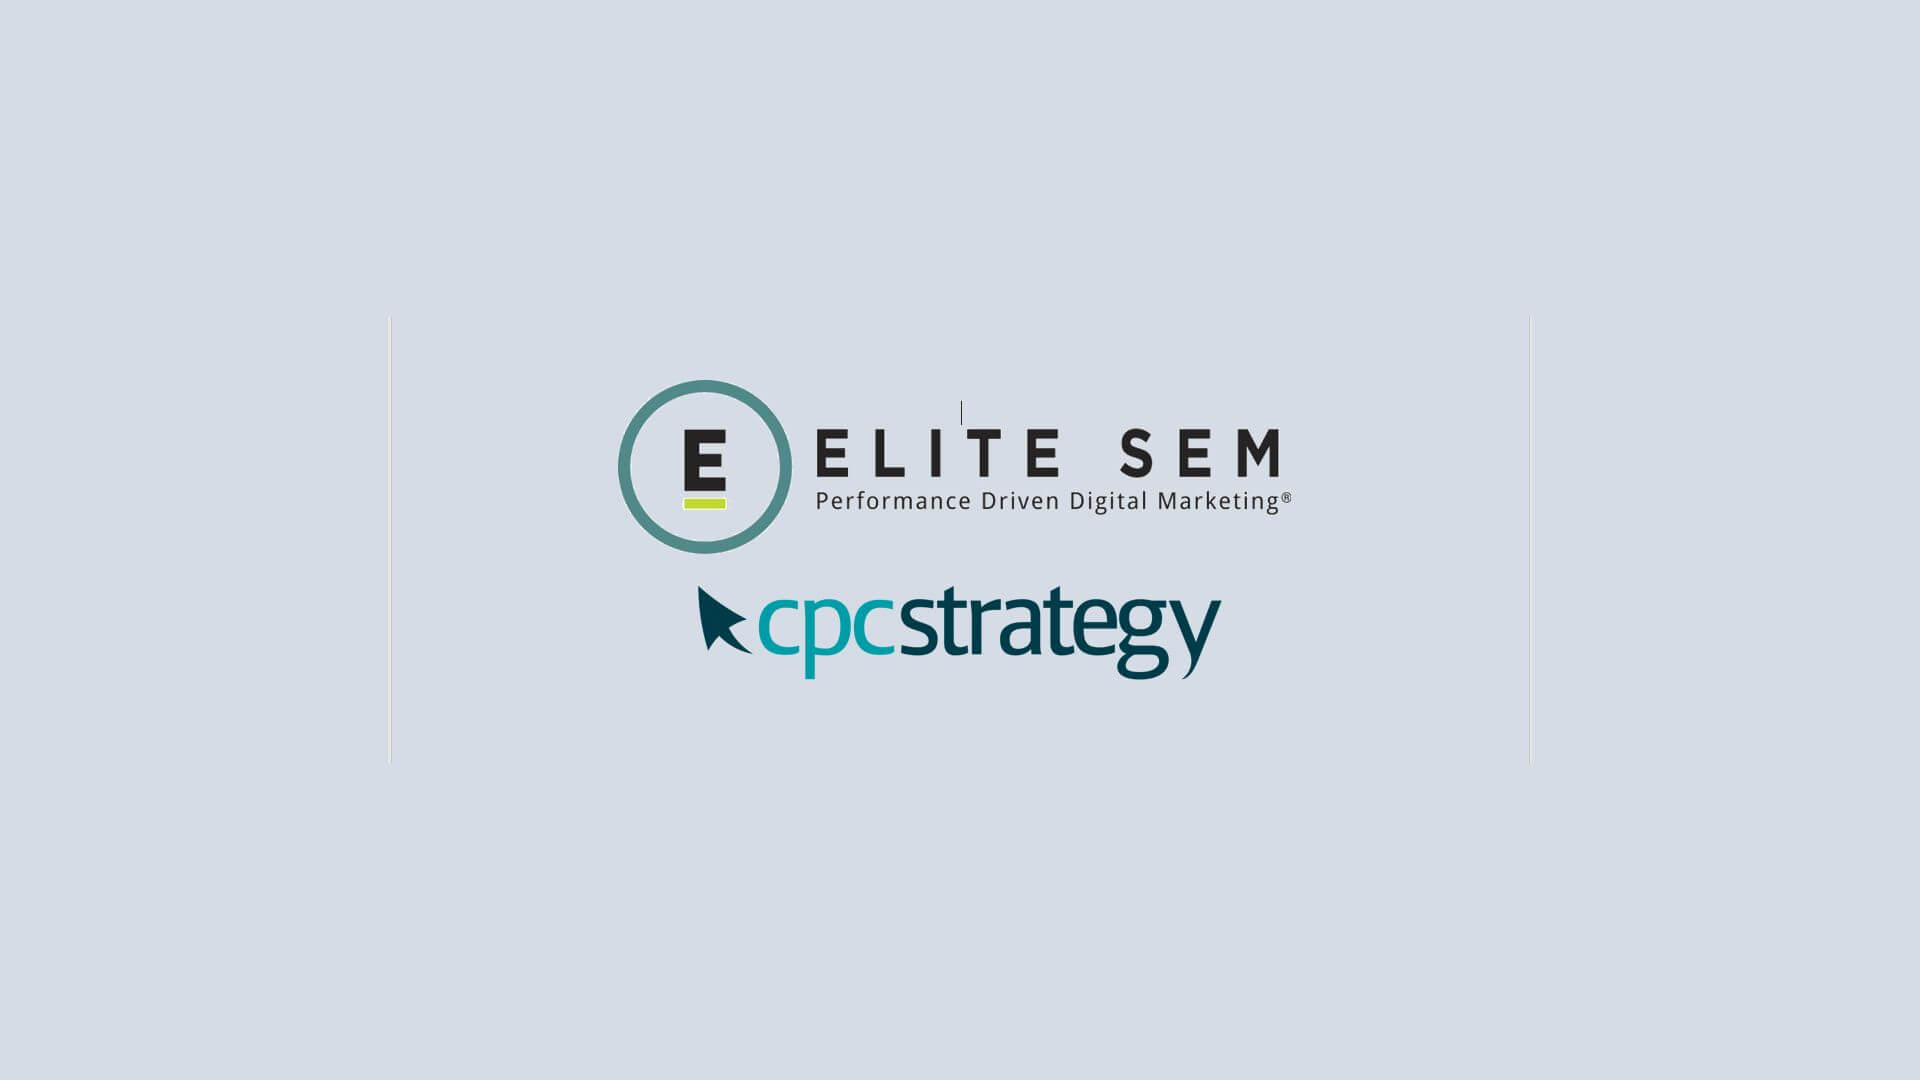 Elite SEM adquiere CPC Strategy con miras a hacer crecer su práctica en Amazon